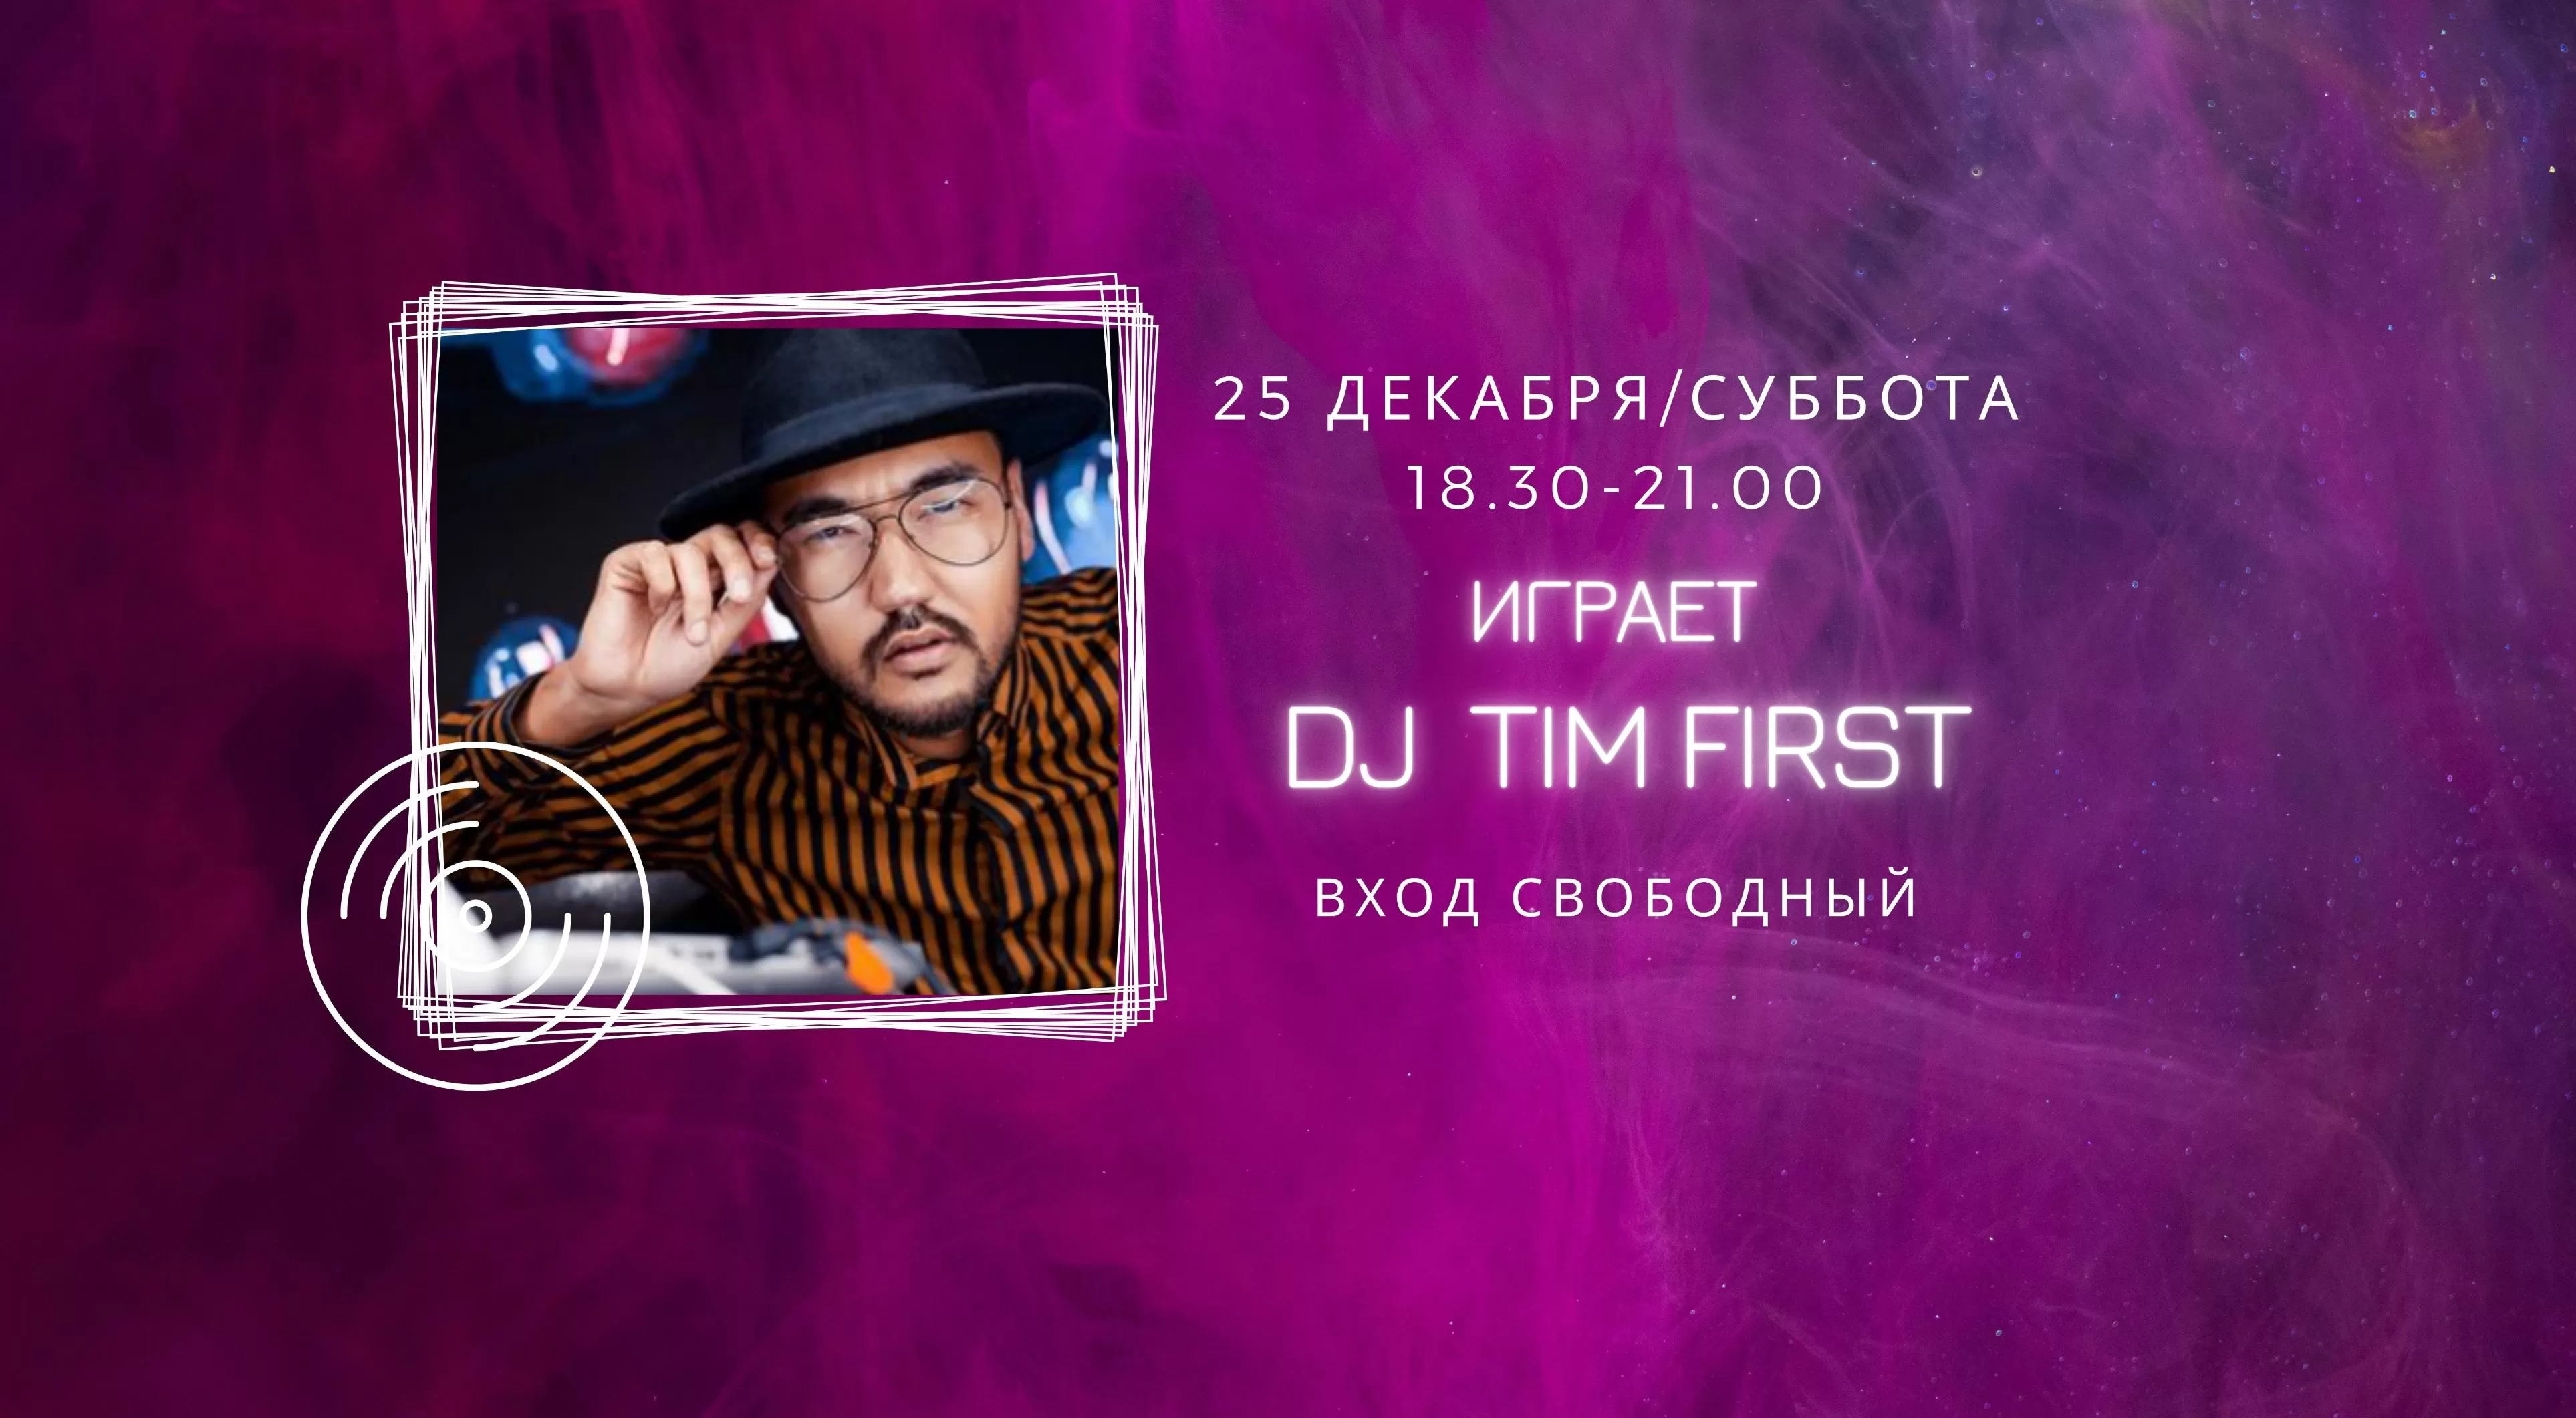 25.12 DJ Tim first